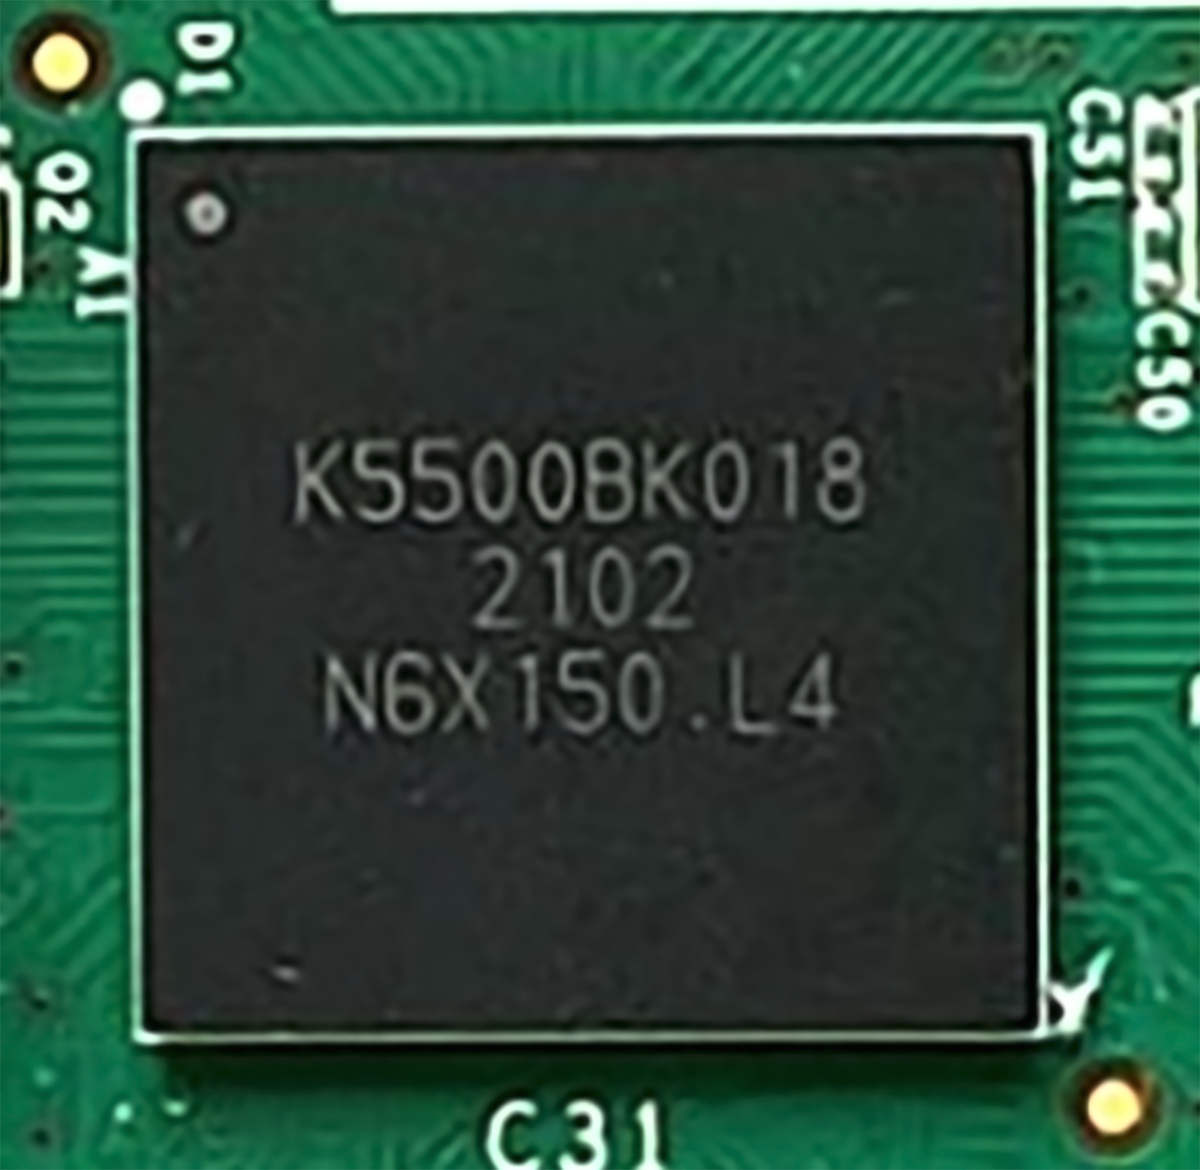 Малопотребляющий микроконтроллер «Комдив-МК» на основе отечественных IP-блоков для применения в устройствах промышленного интернета вещей, 300 МГц. Изготовлен по техпроцессу 65 нм.